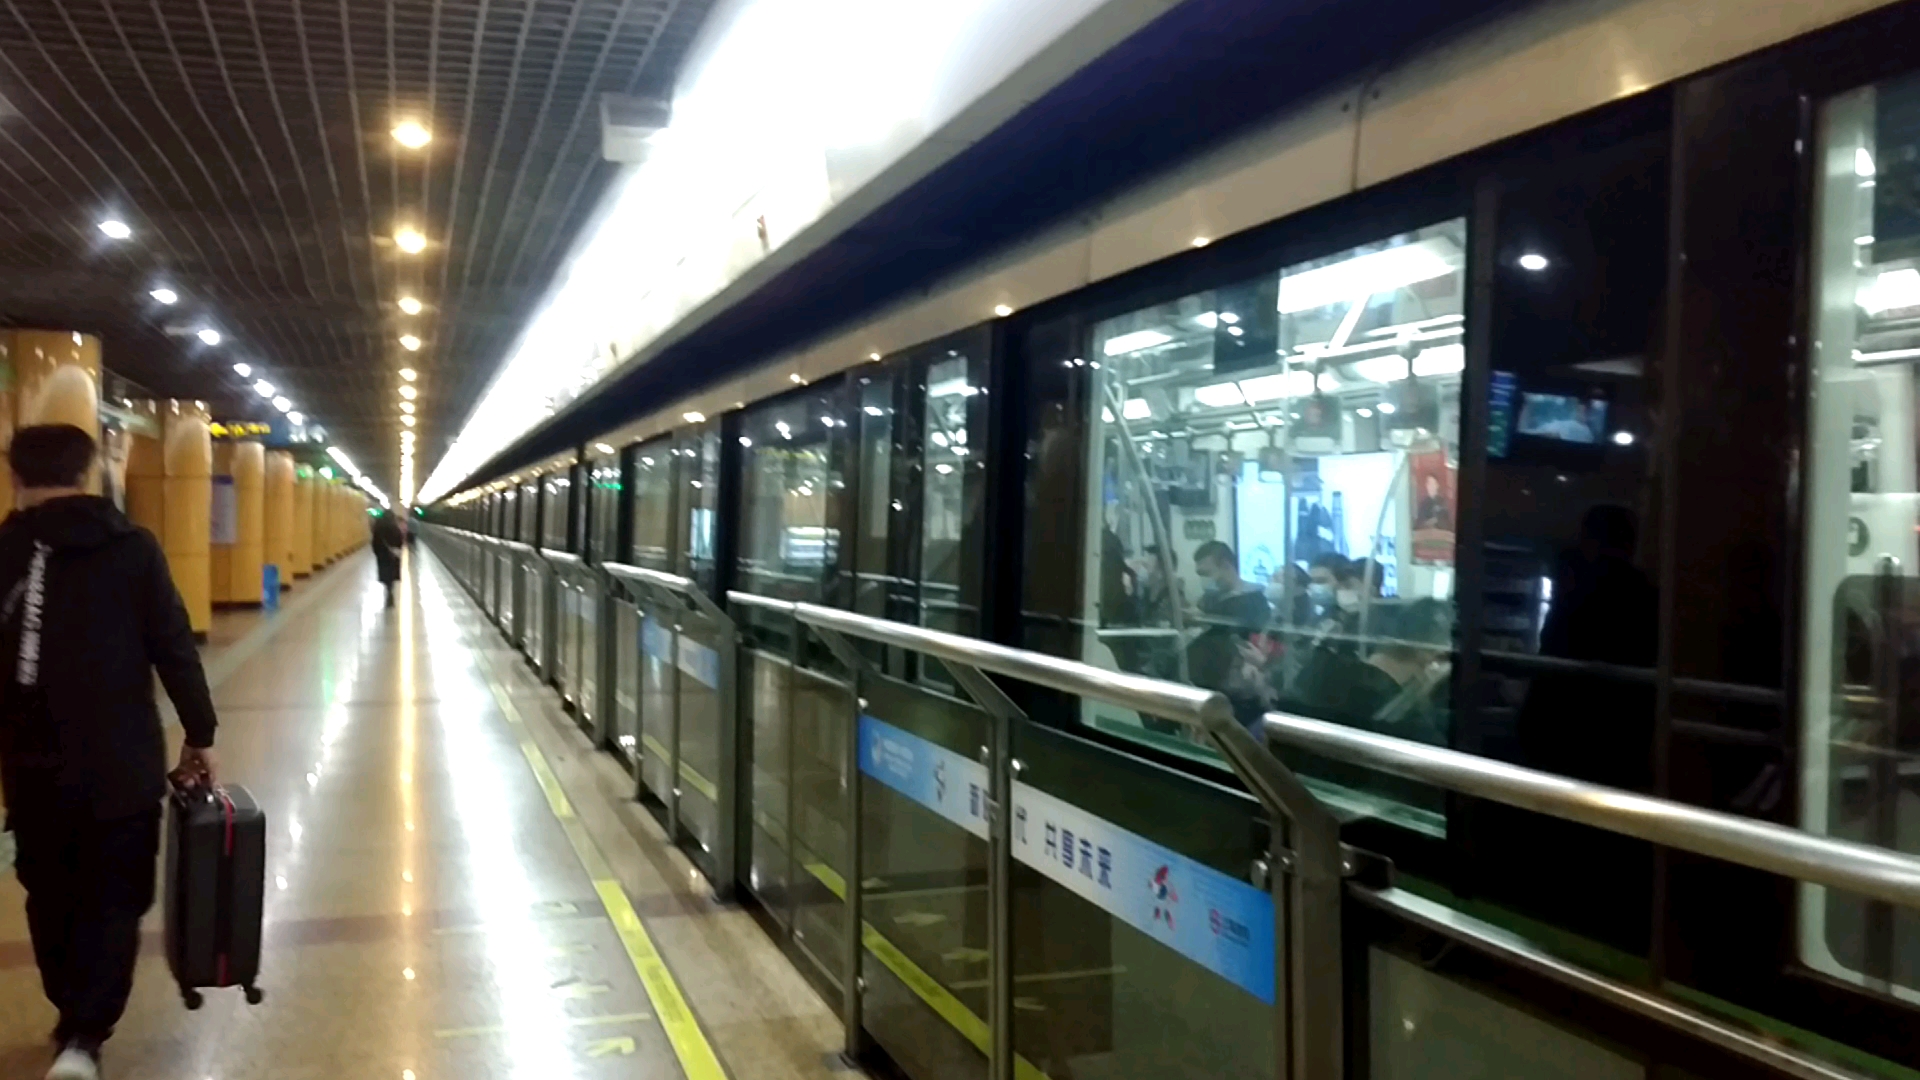 上海地铁2号线小鲶鱼图片